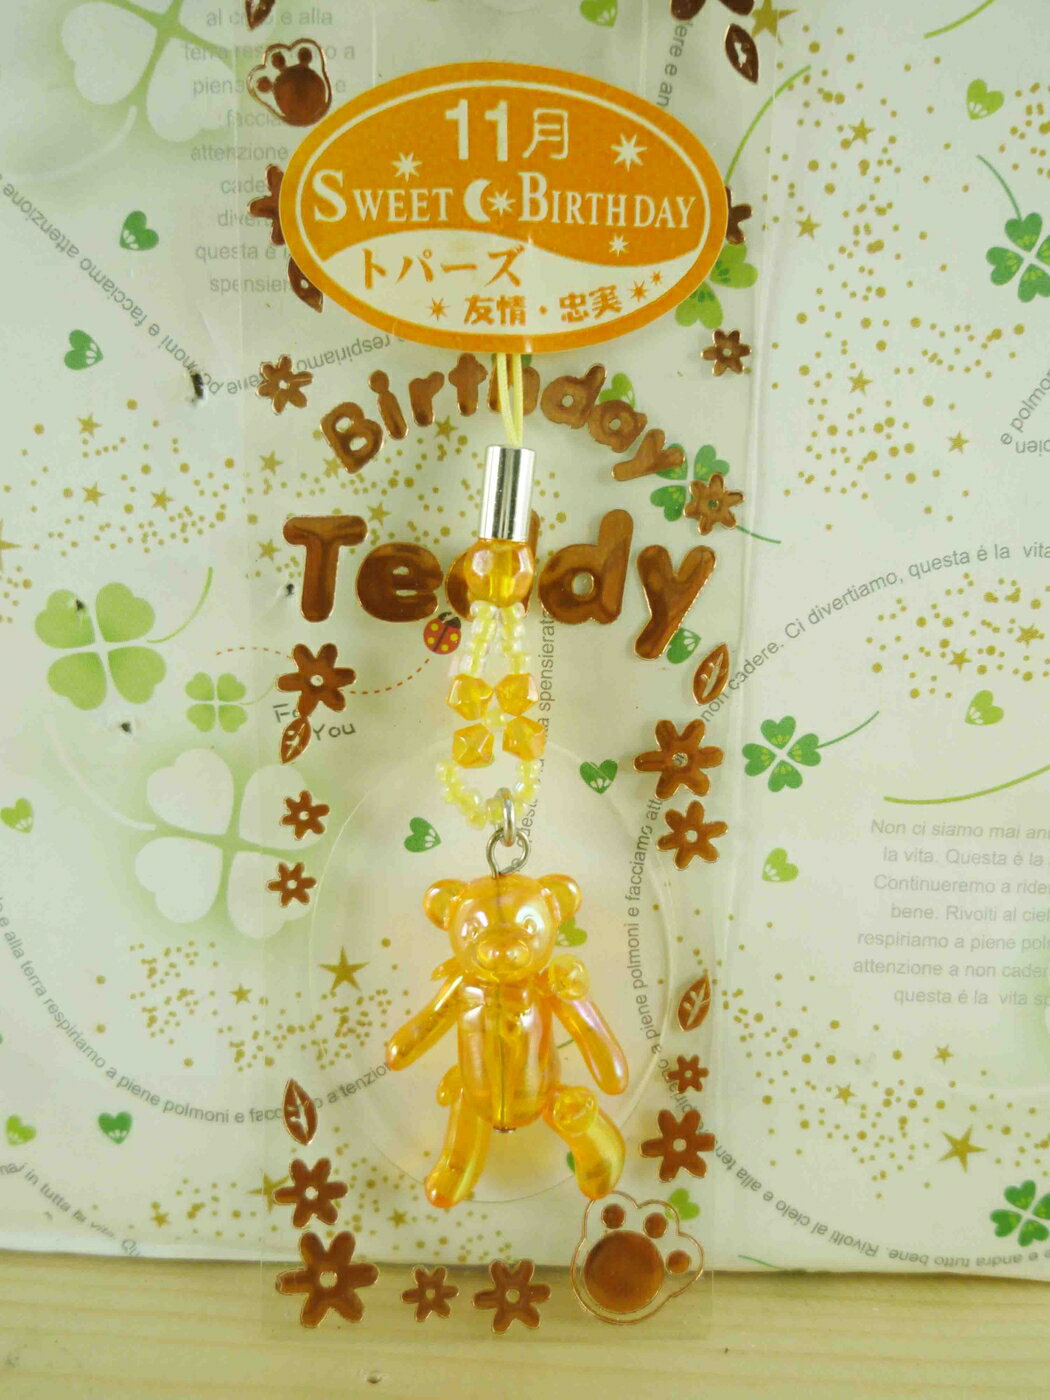 【震撼精品百貨】泰迪熊 Teddy Bear 手機吊飾-誕生11月橘色 震撼日式精品百貨